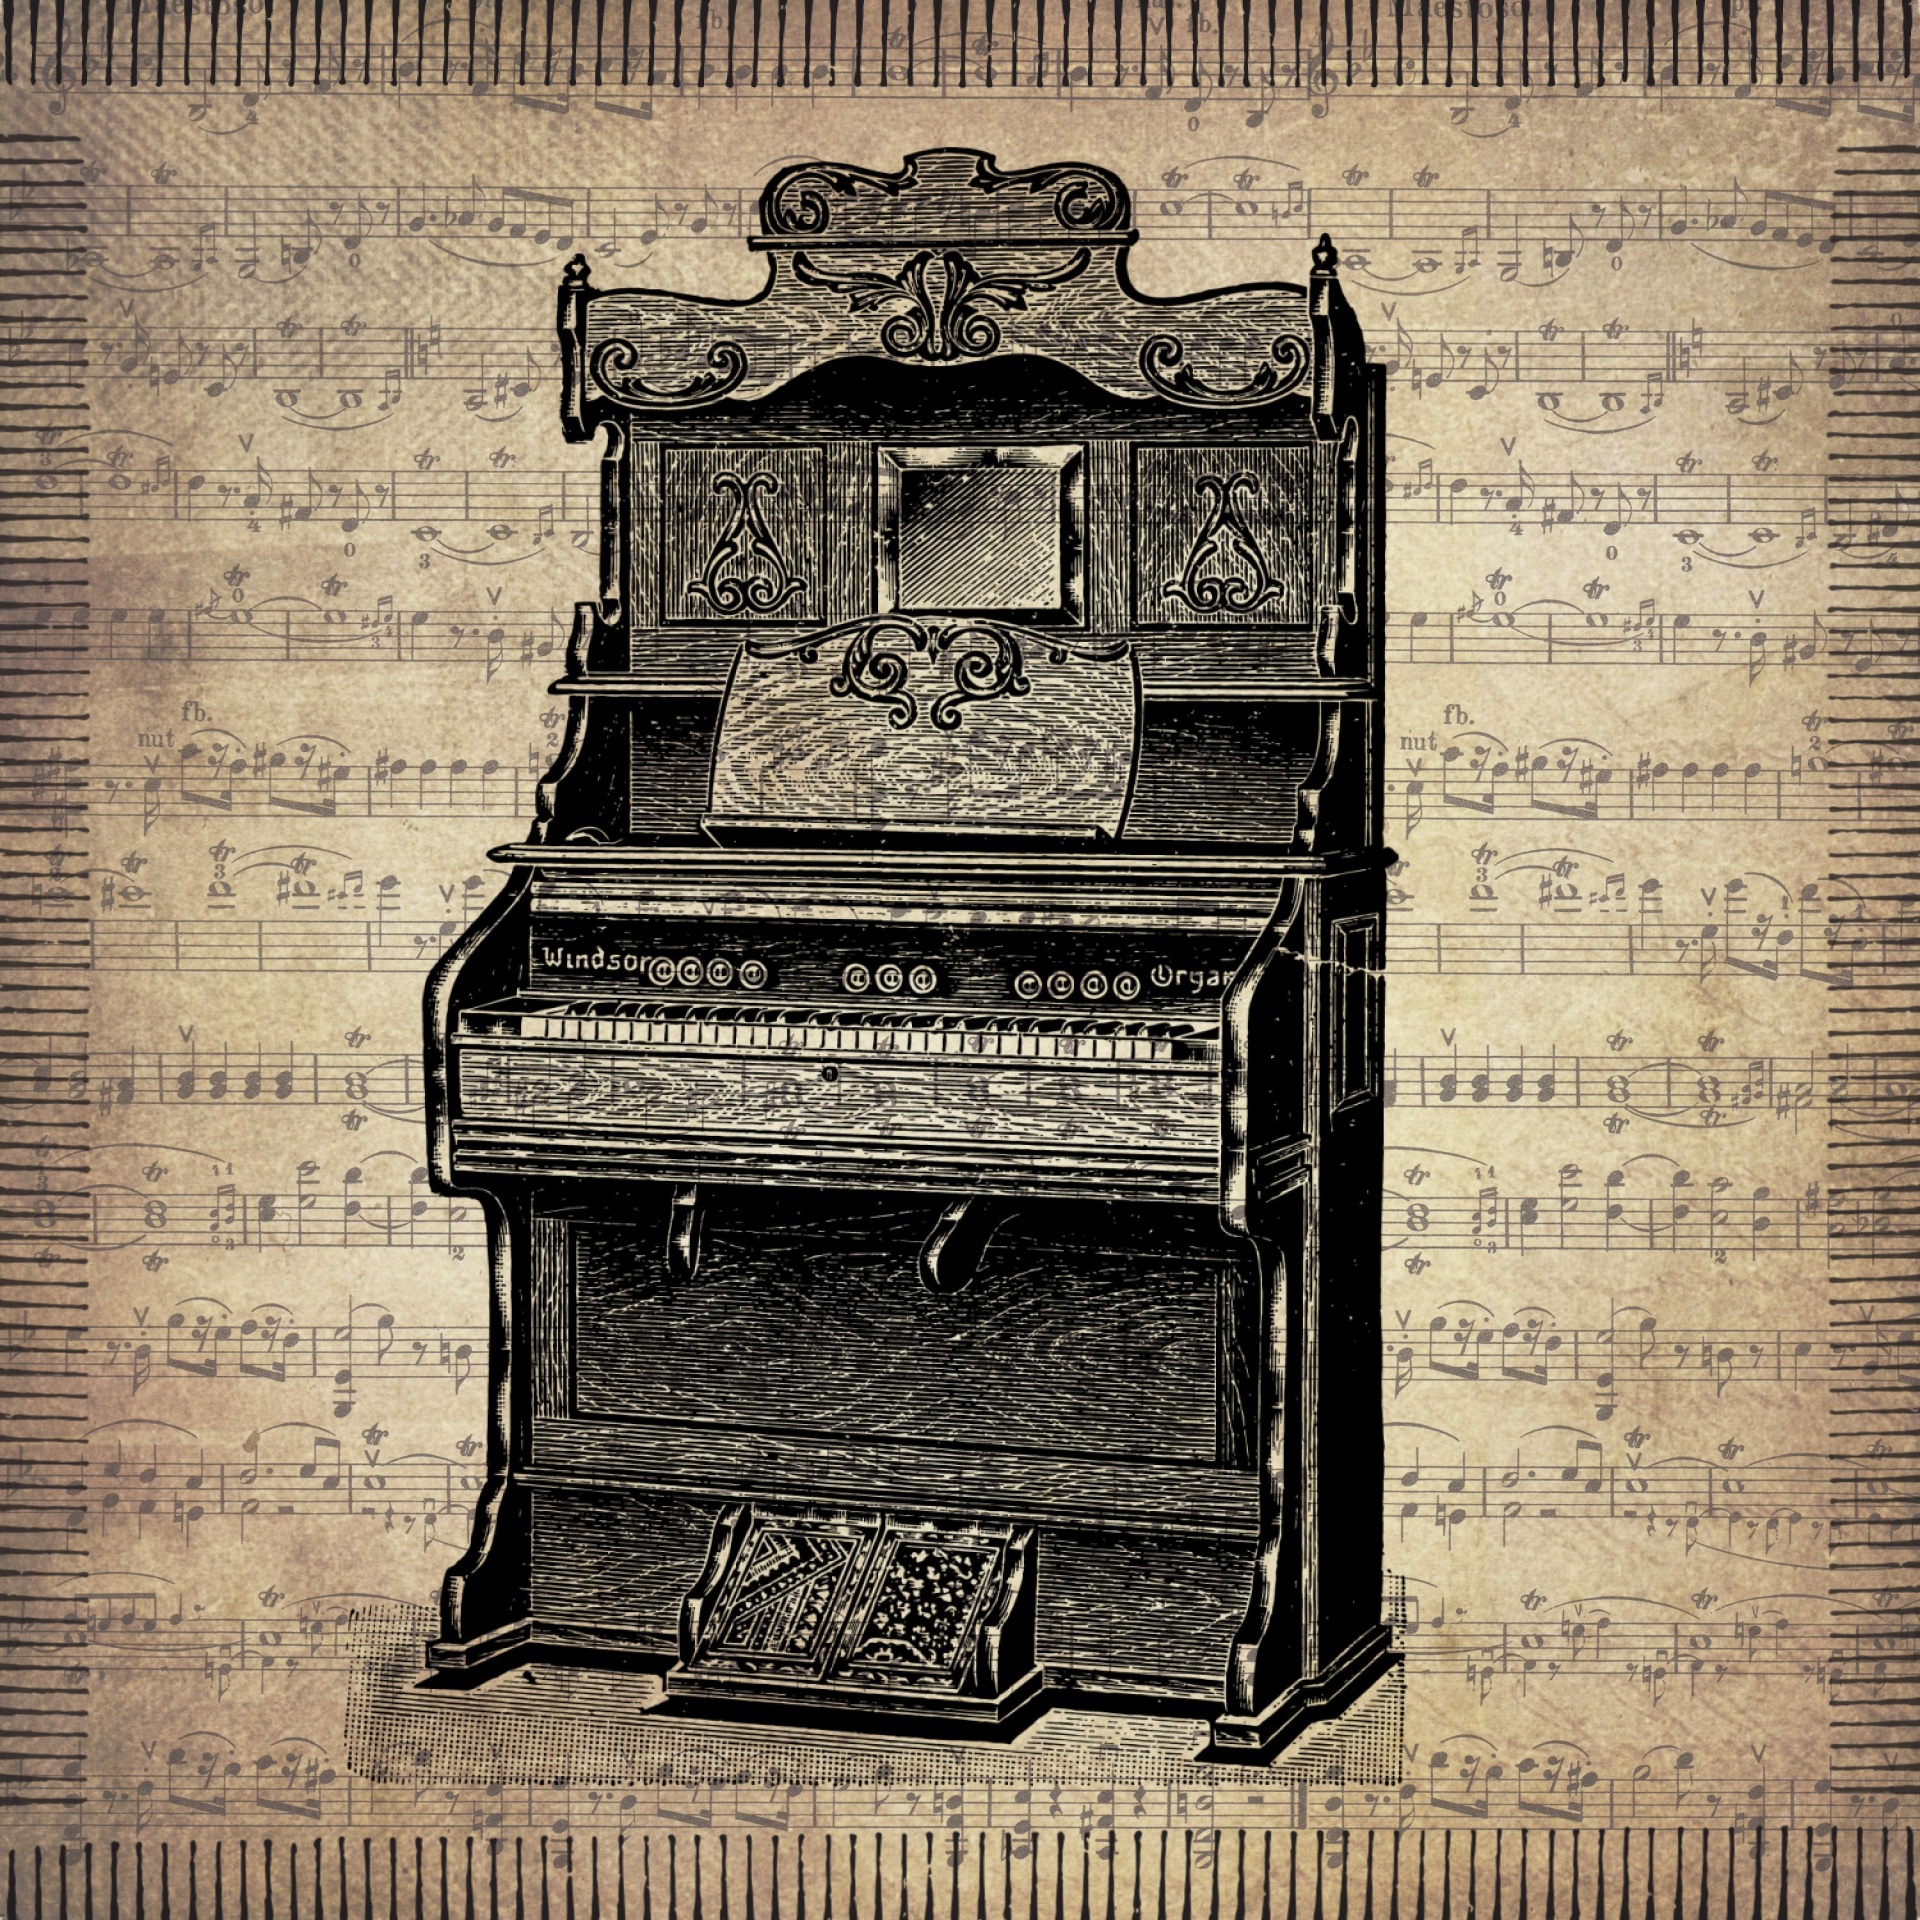 Vintage Piano